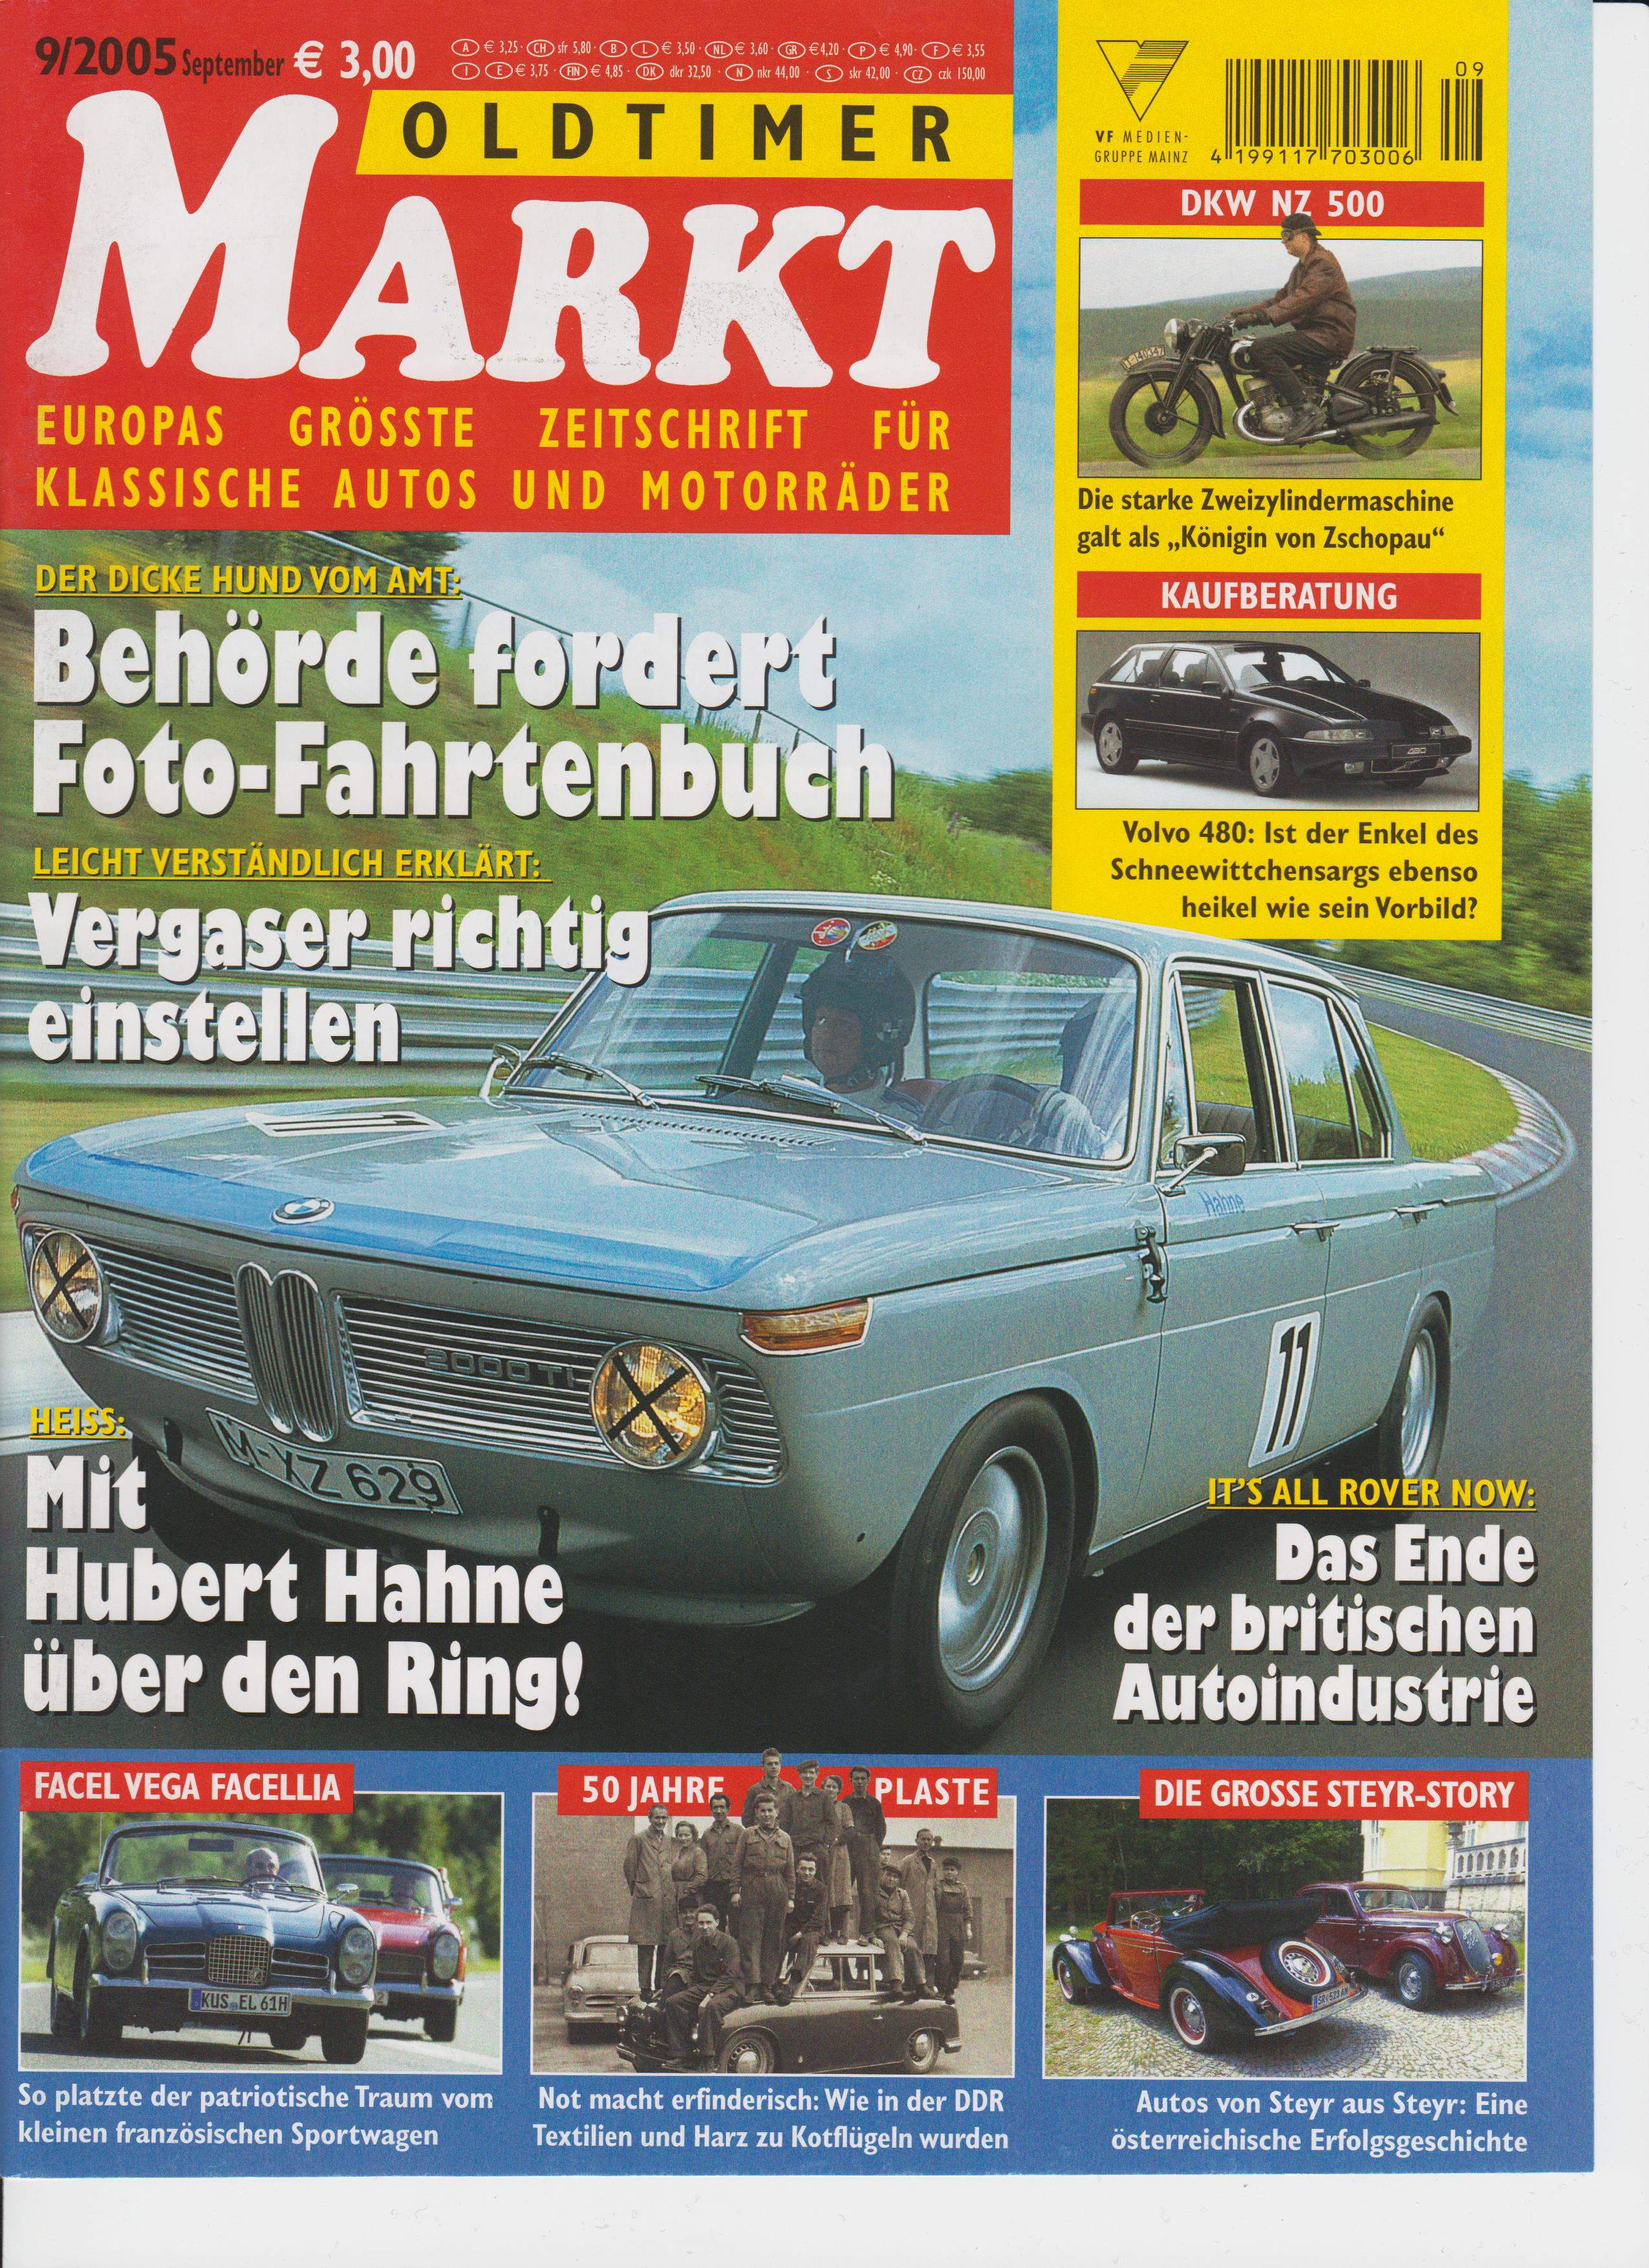 Specialist magazine Oldtimer Markt 09 2005